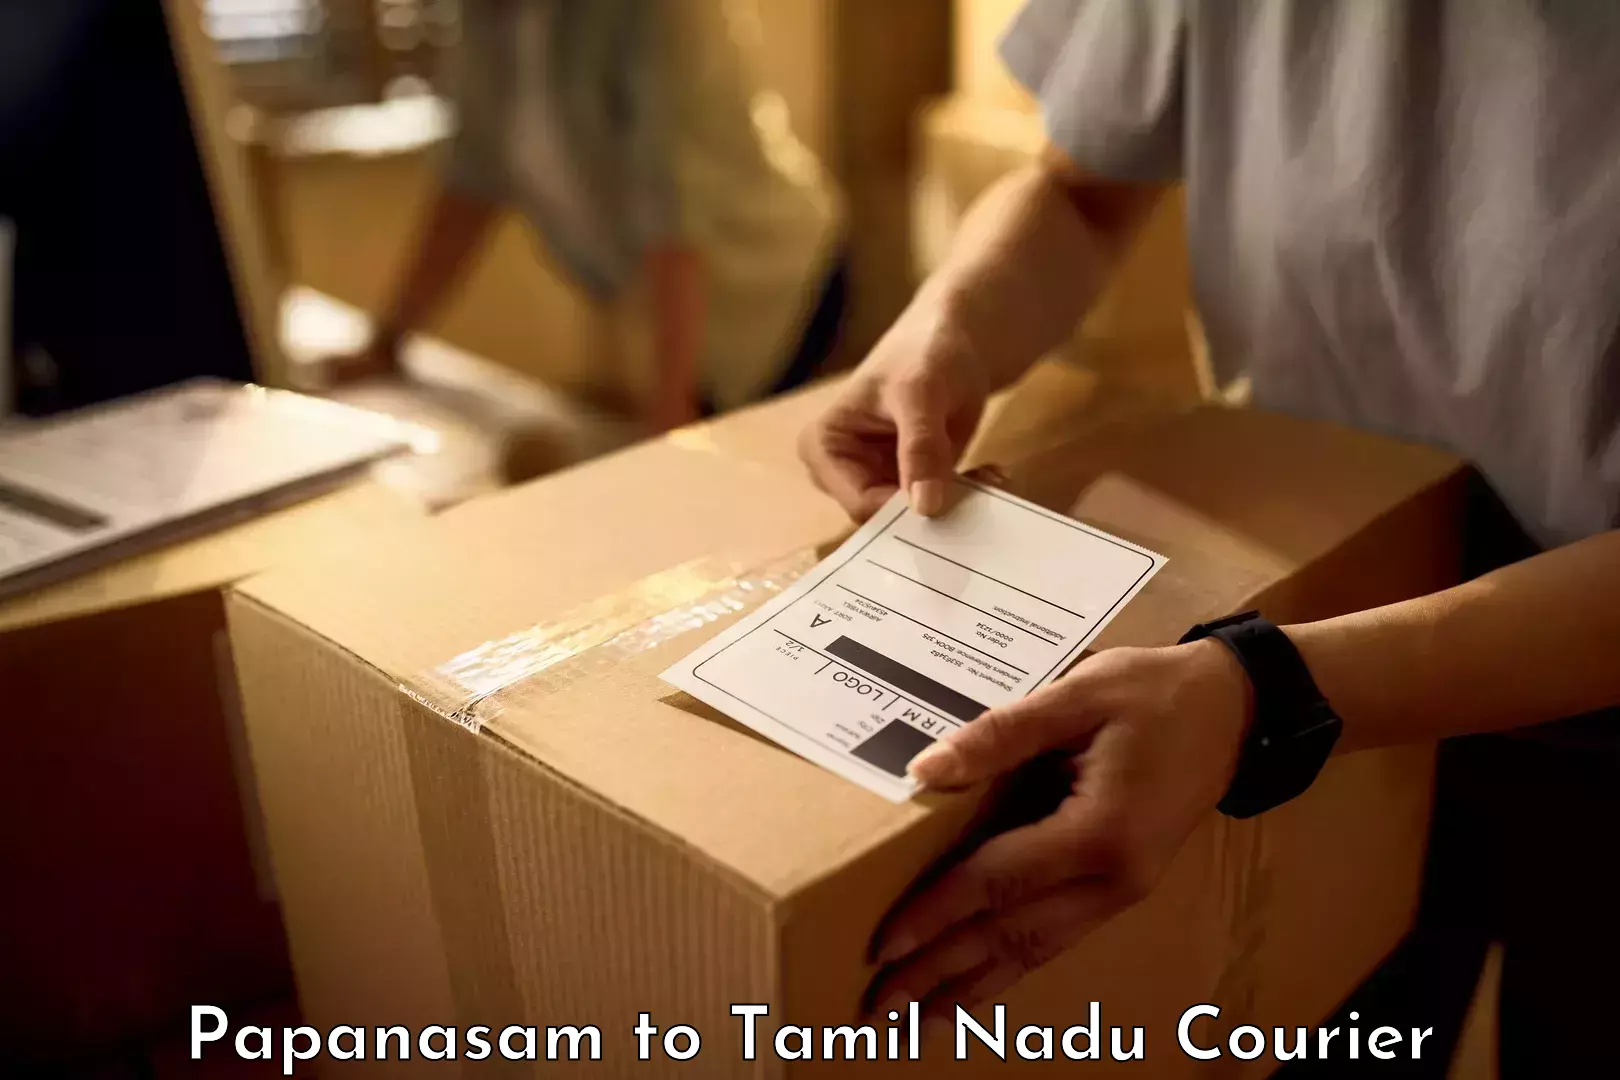 Baggage transport scheduler Papanasam to Tamil Nadu